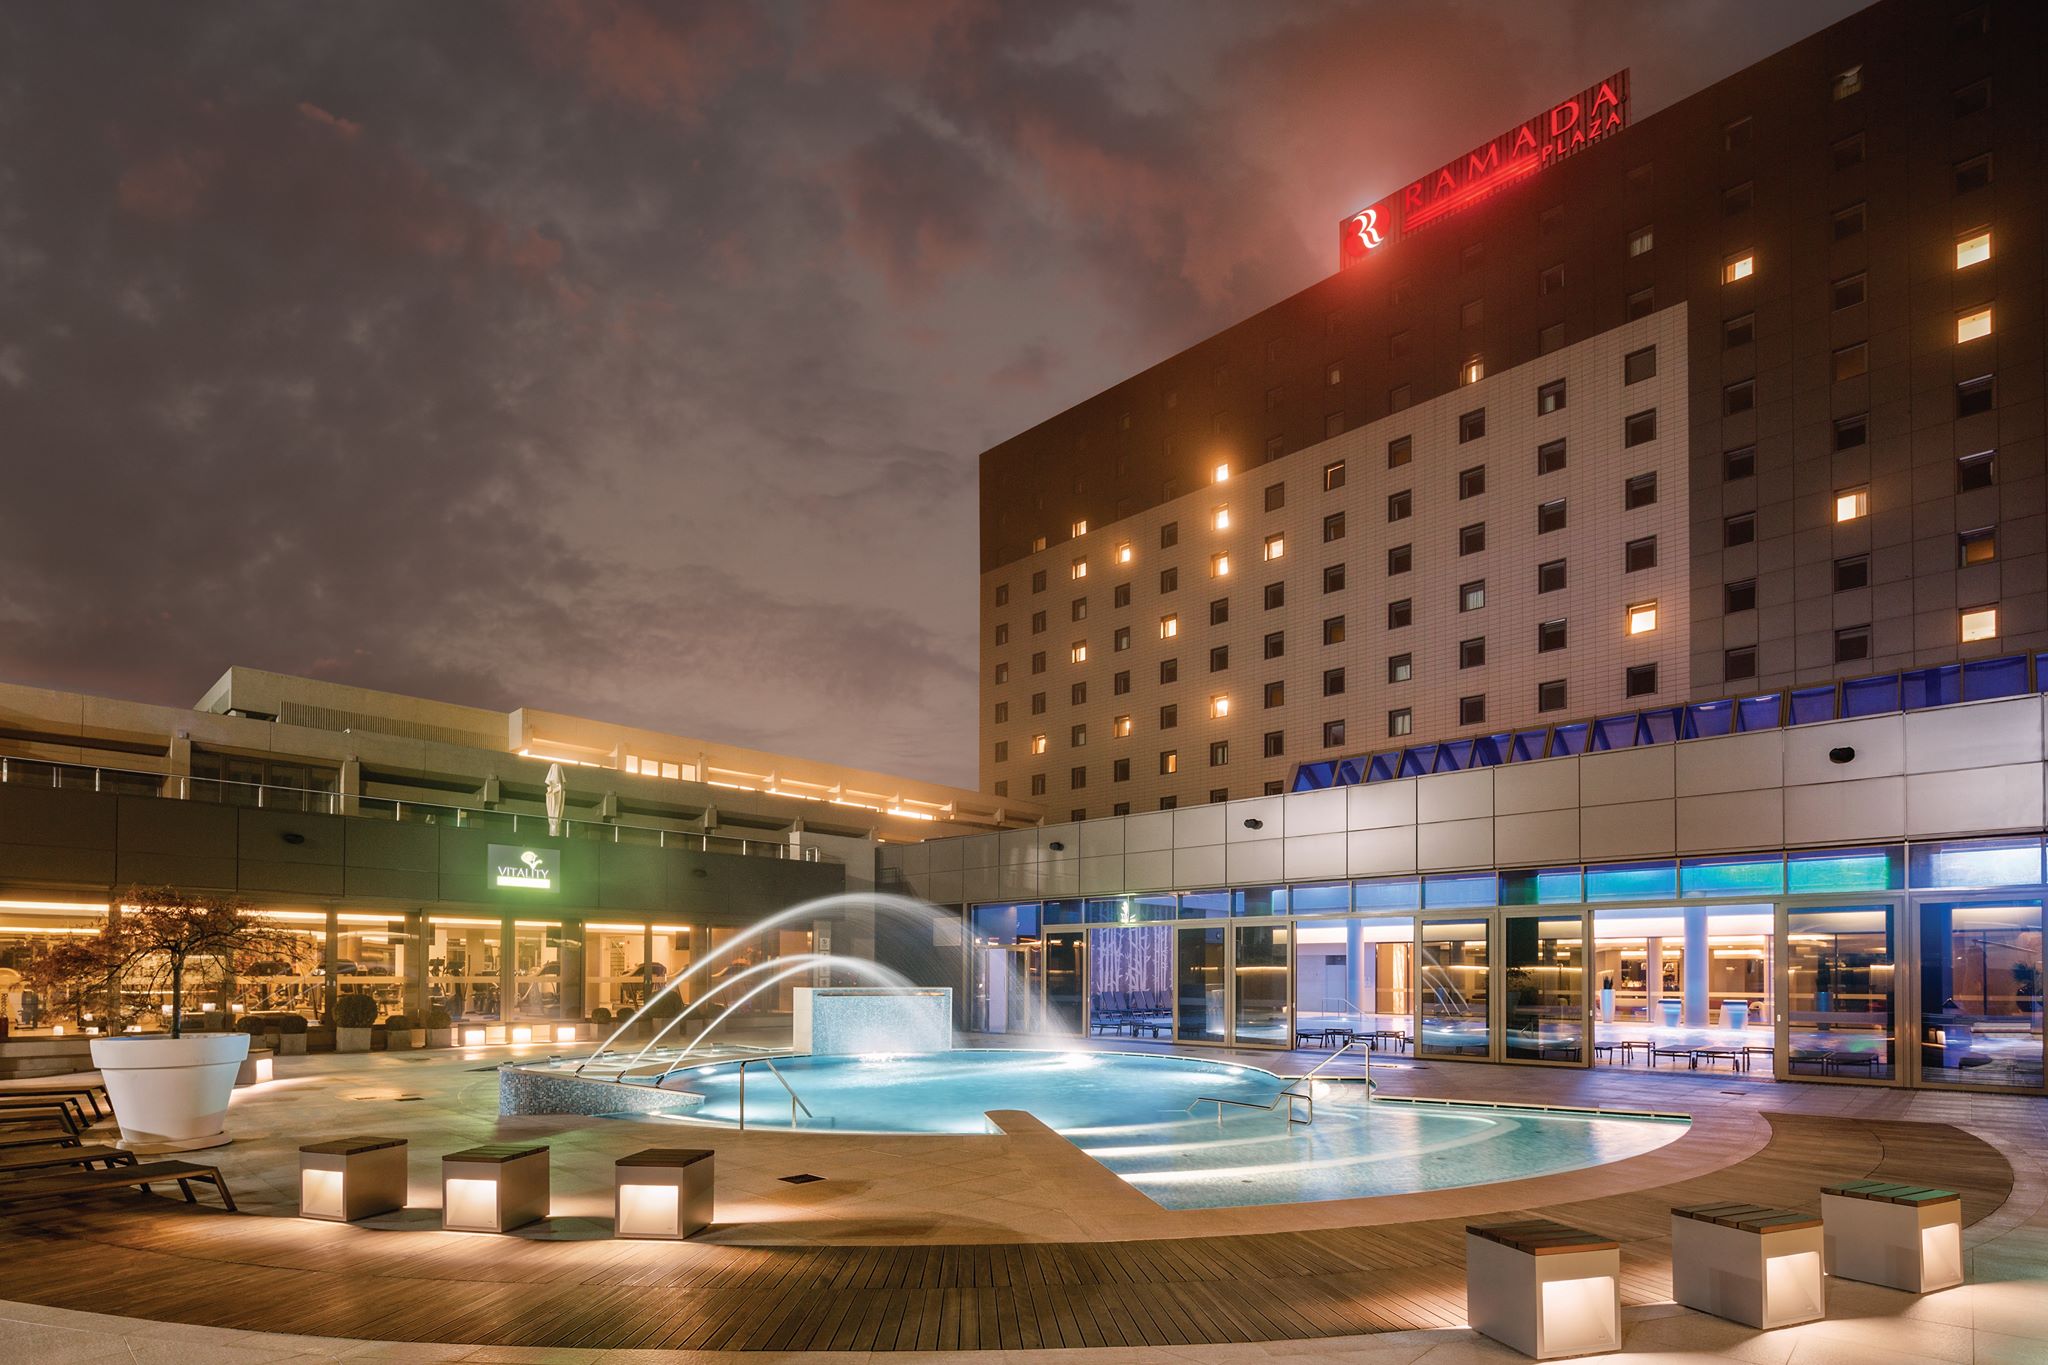 Hotelul Ramada Plaza Bucharest primeşte înca o dată recunoşterea internaţională a calităţii serviciilor